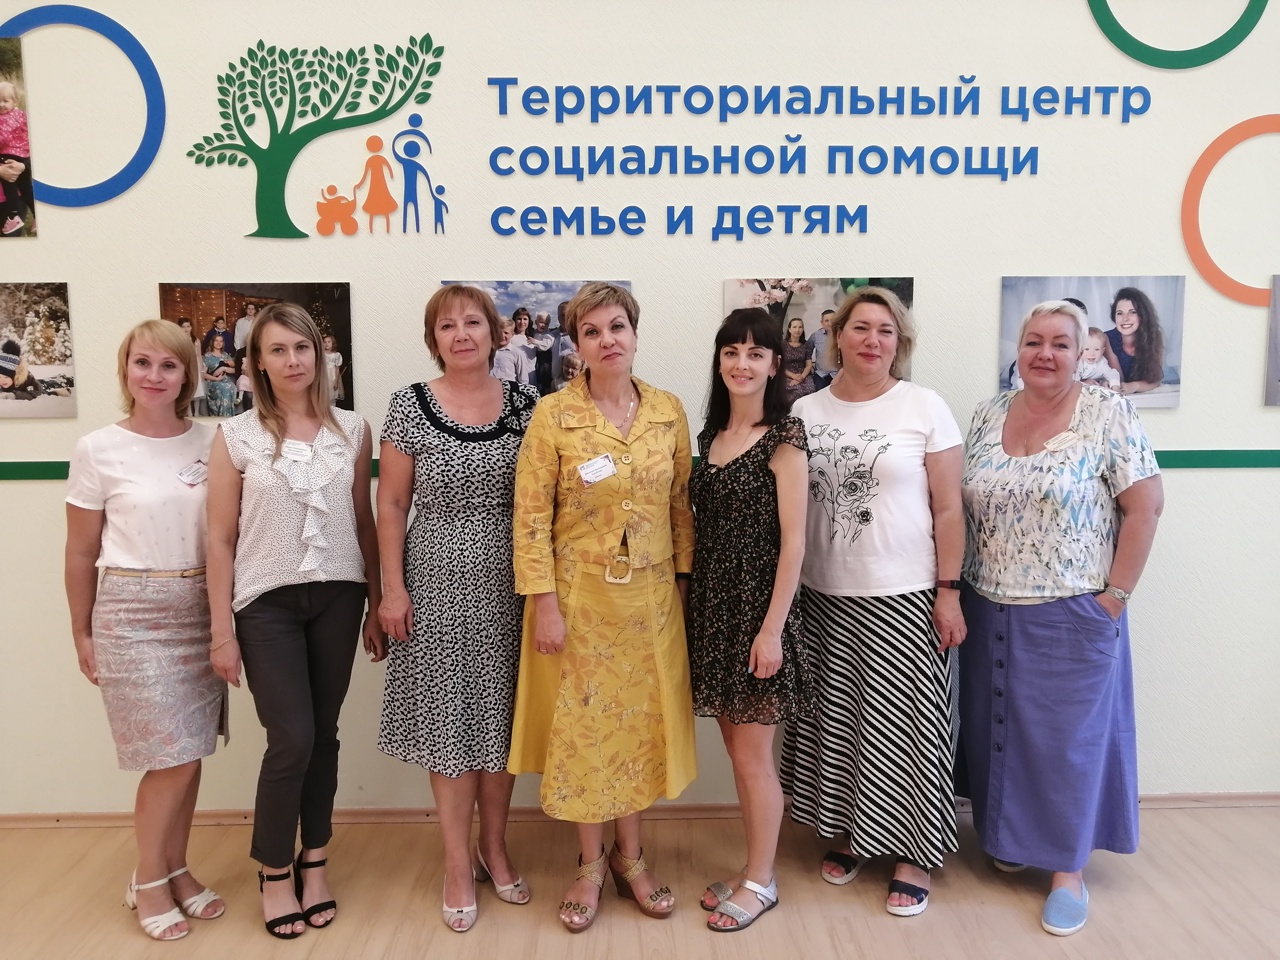 Коллеги из города Алчевска прошли стажировку в Территориальном центре